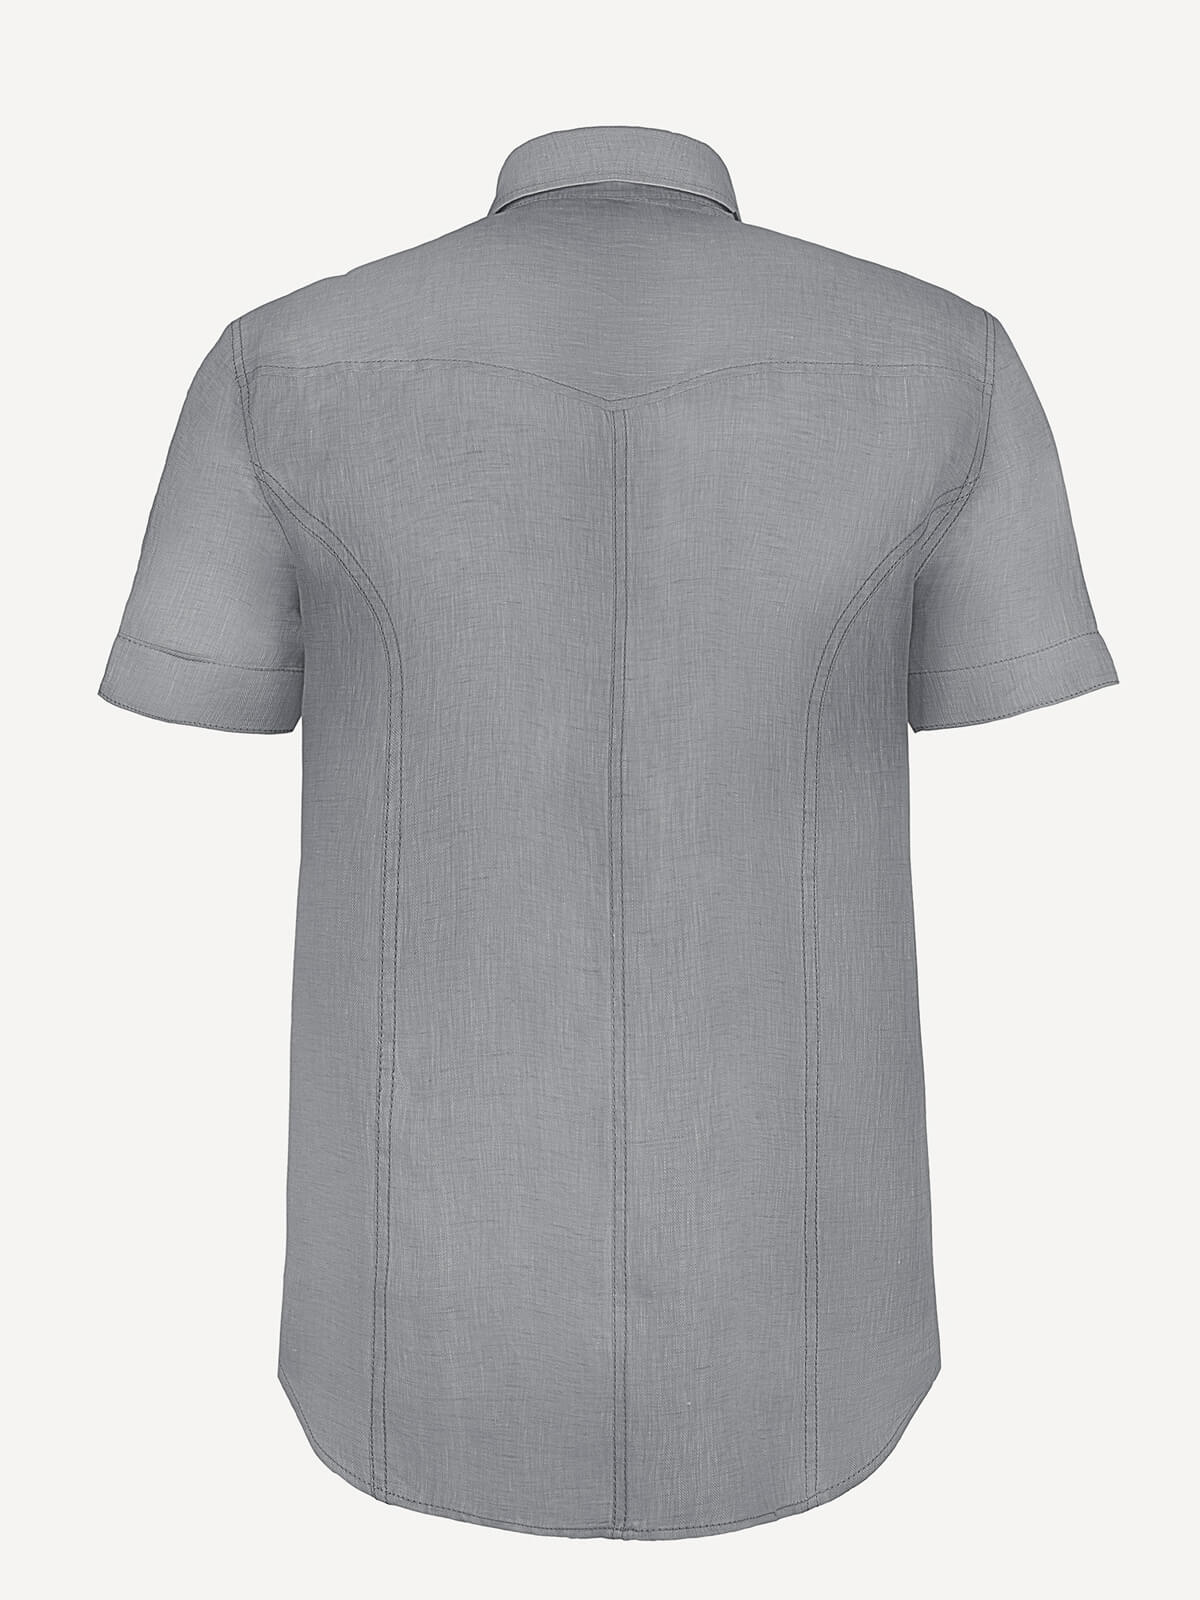 Camicia Denim back dark grey color 100% Capri